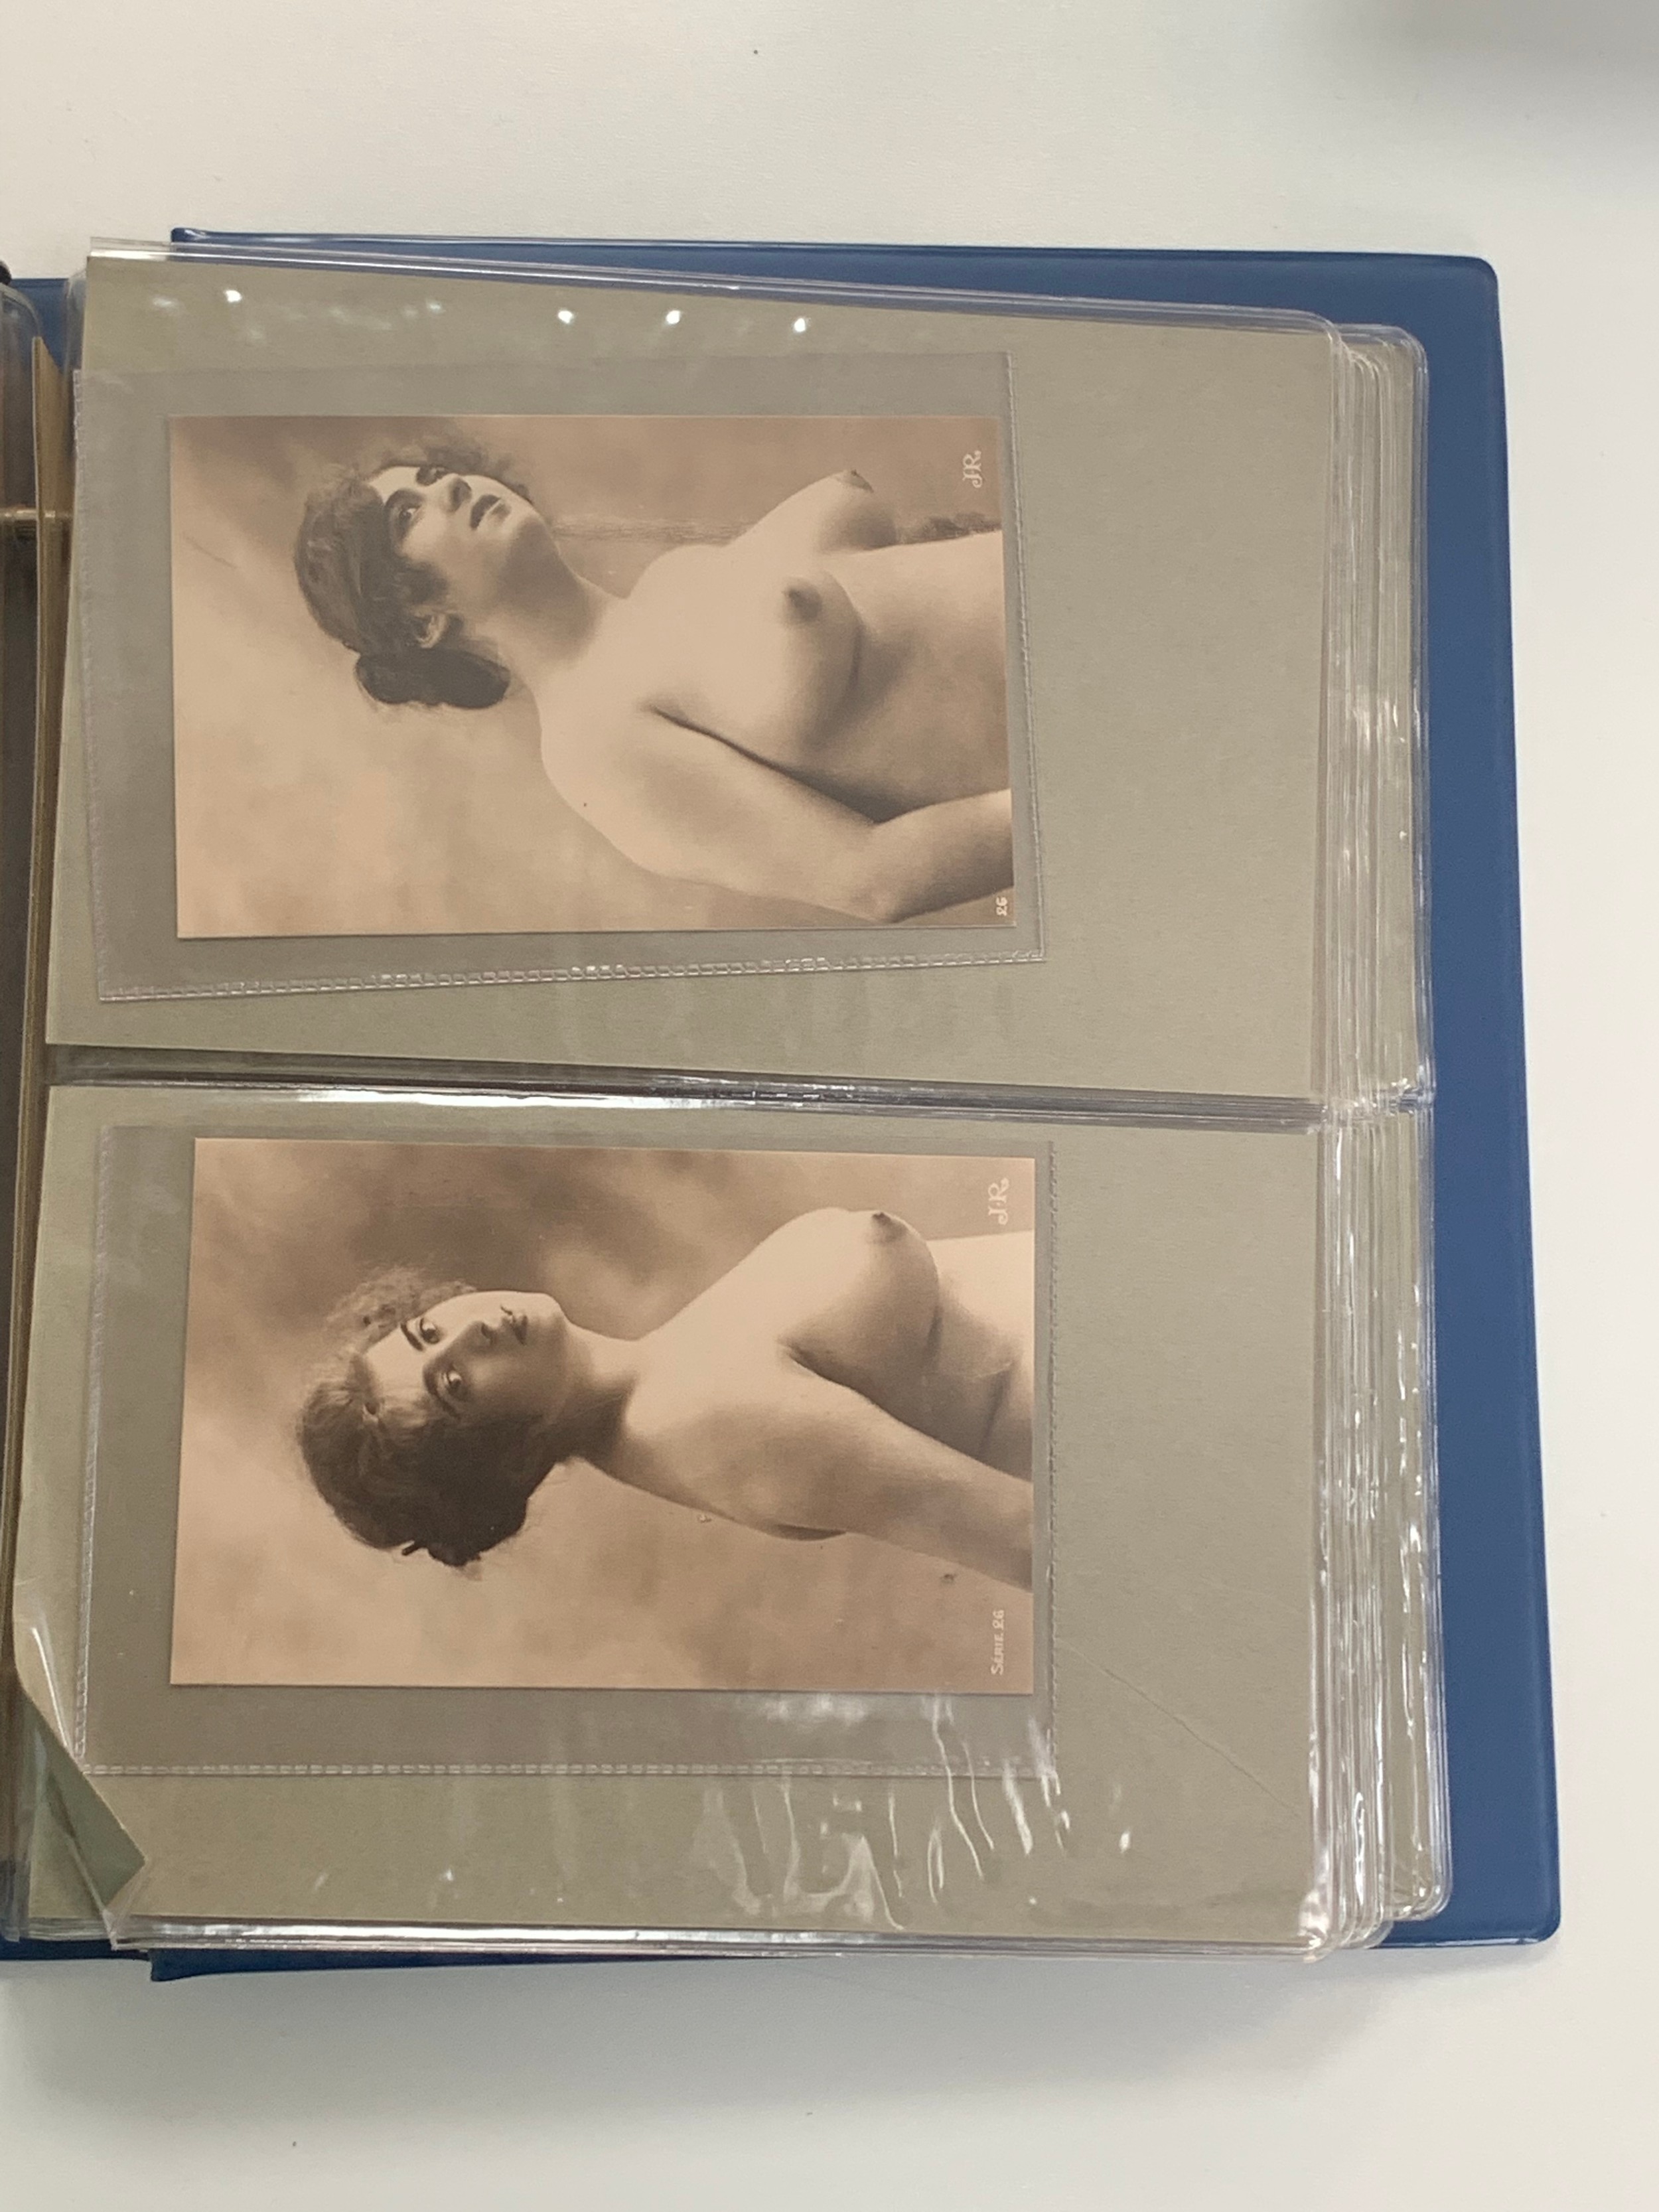 Vintage glamour, range of vintage glamour / erotic postcards in binder. Total cards 36. - Image 5 of 18